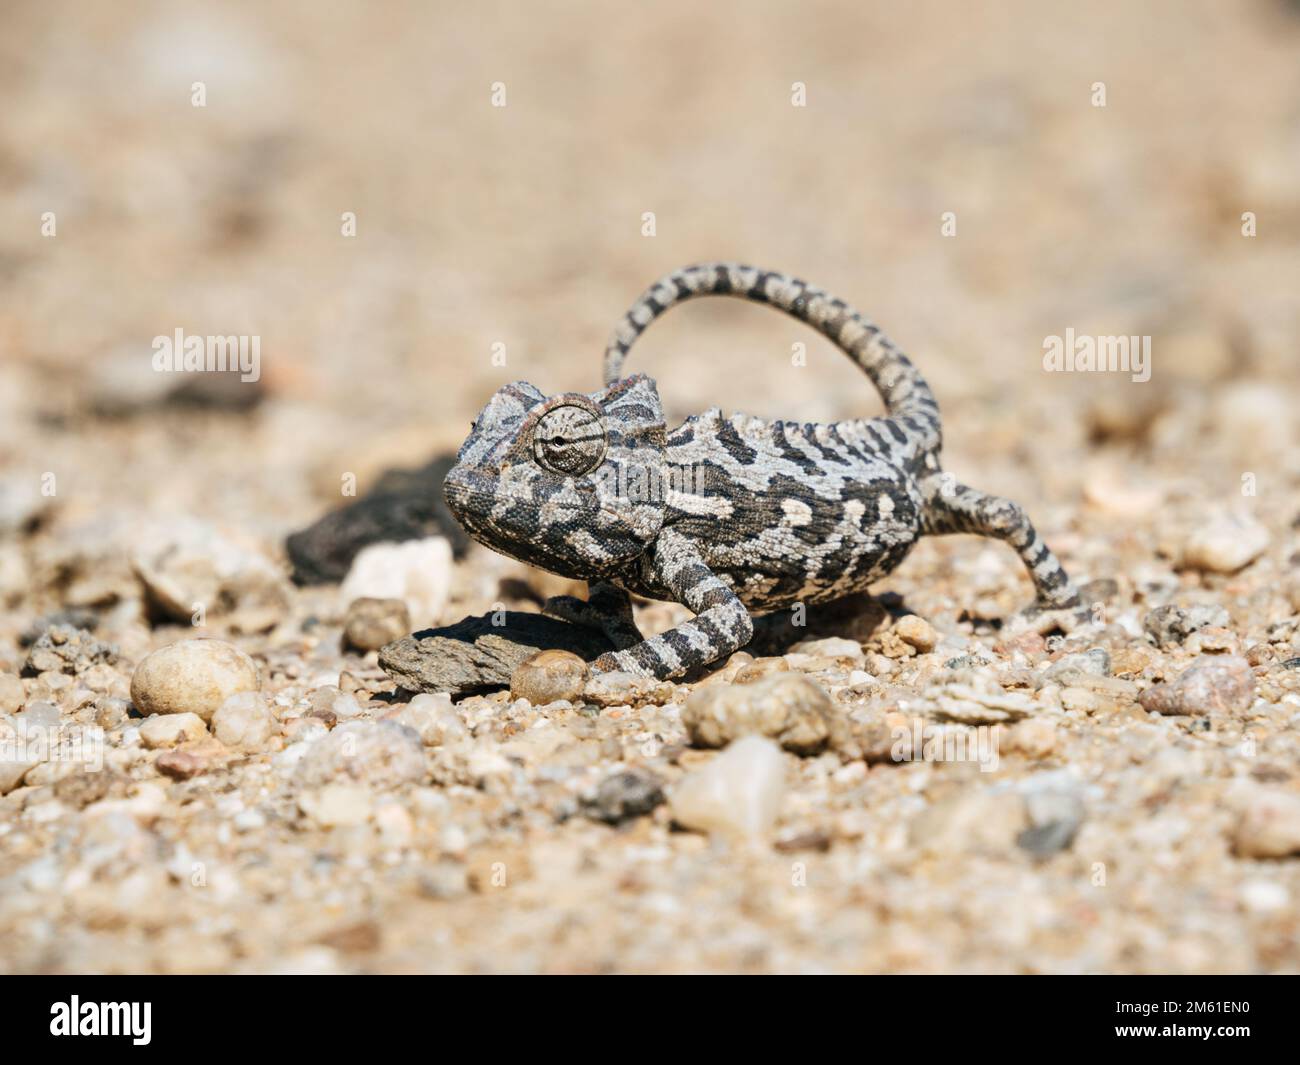 Africa, Namibia, Namaqua chameleon in namib desert, close up Stock Photo